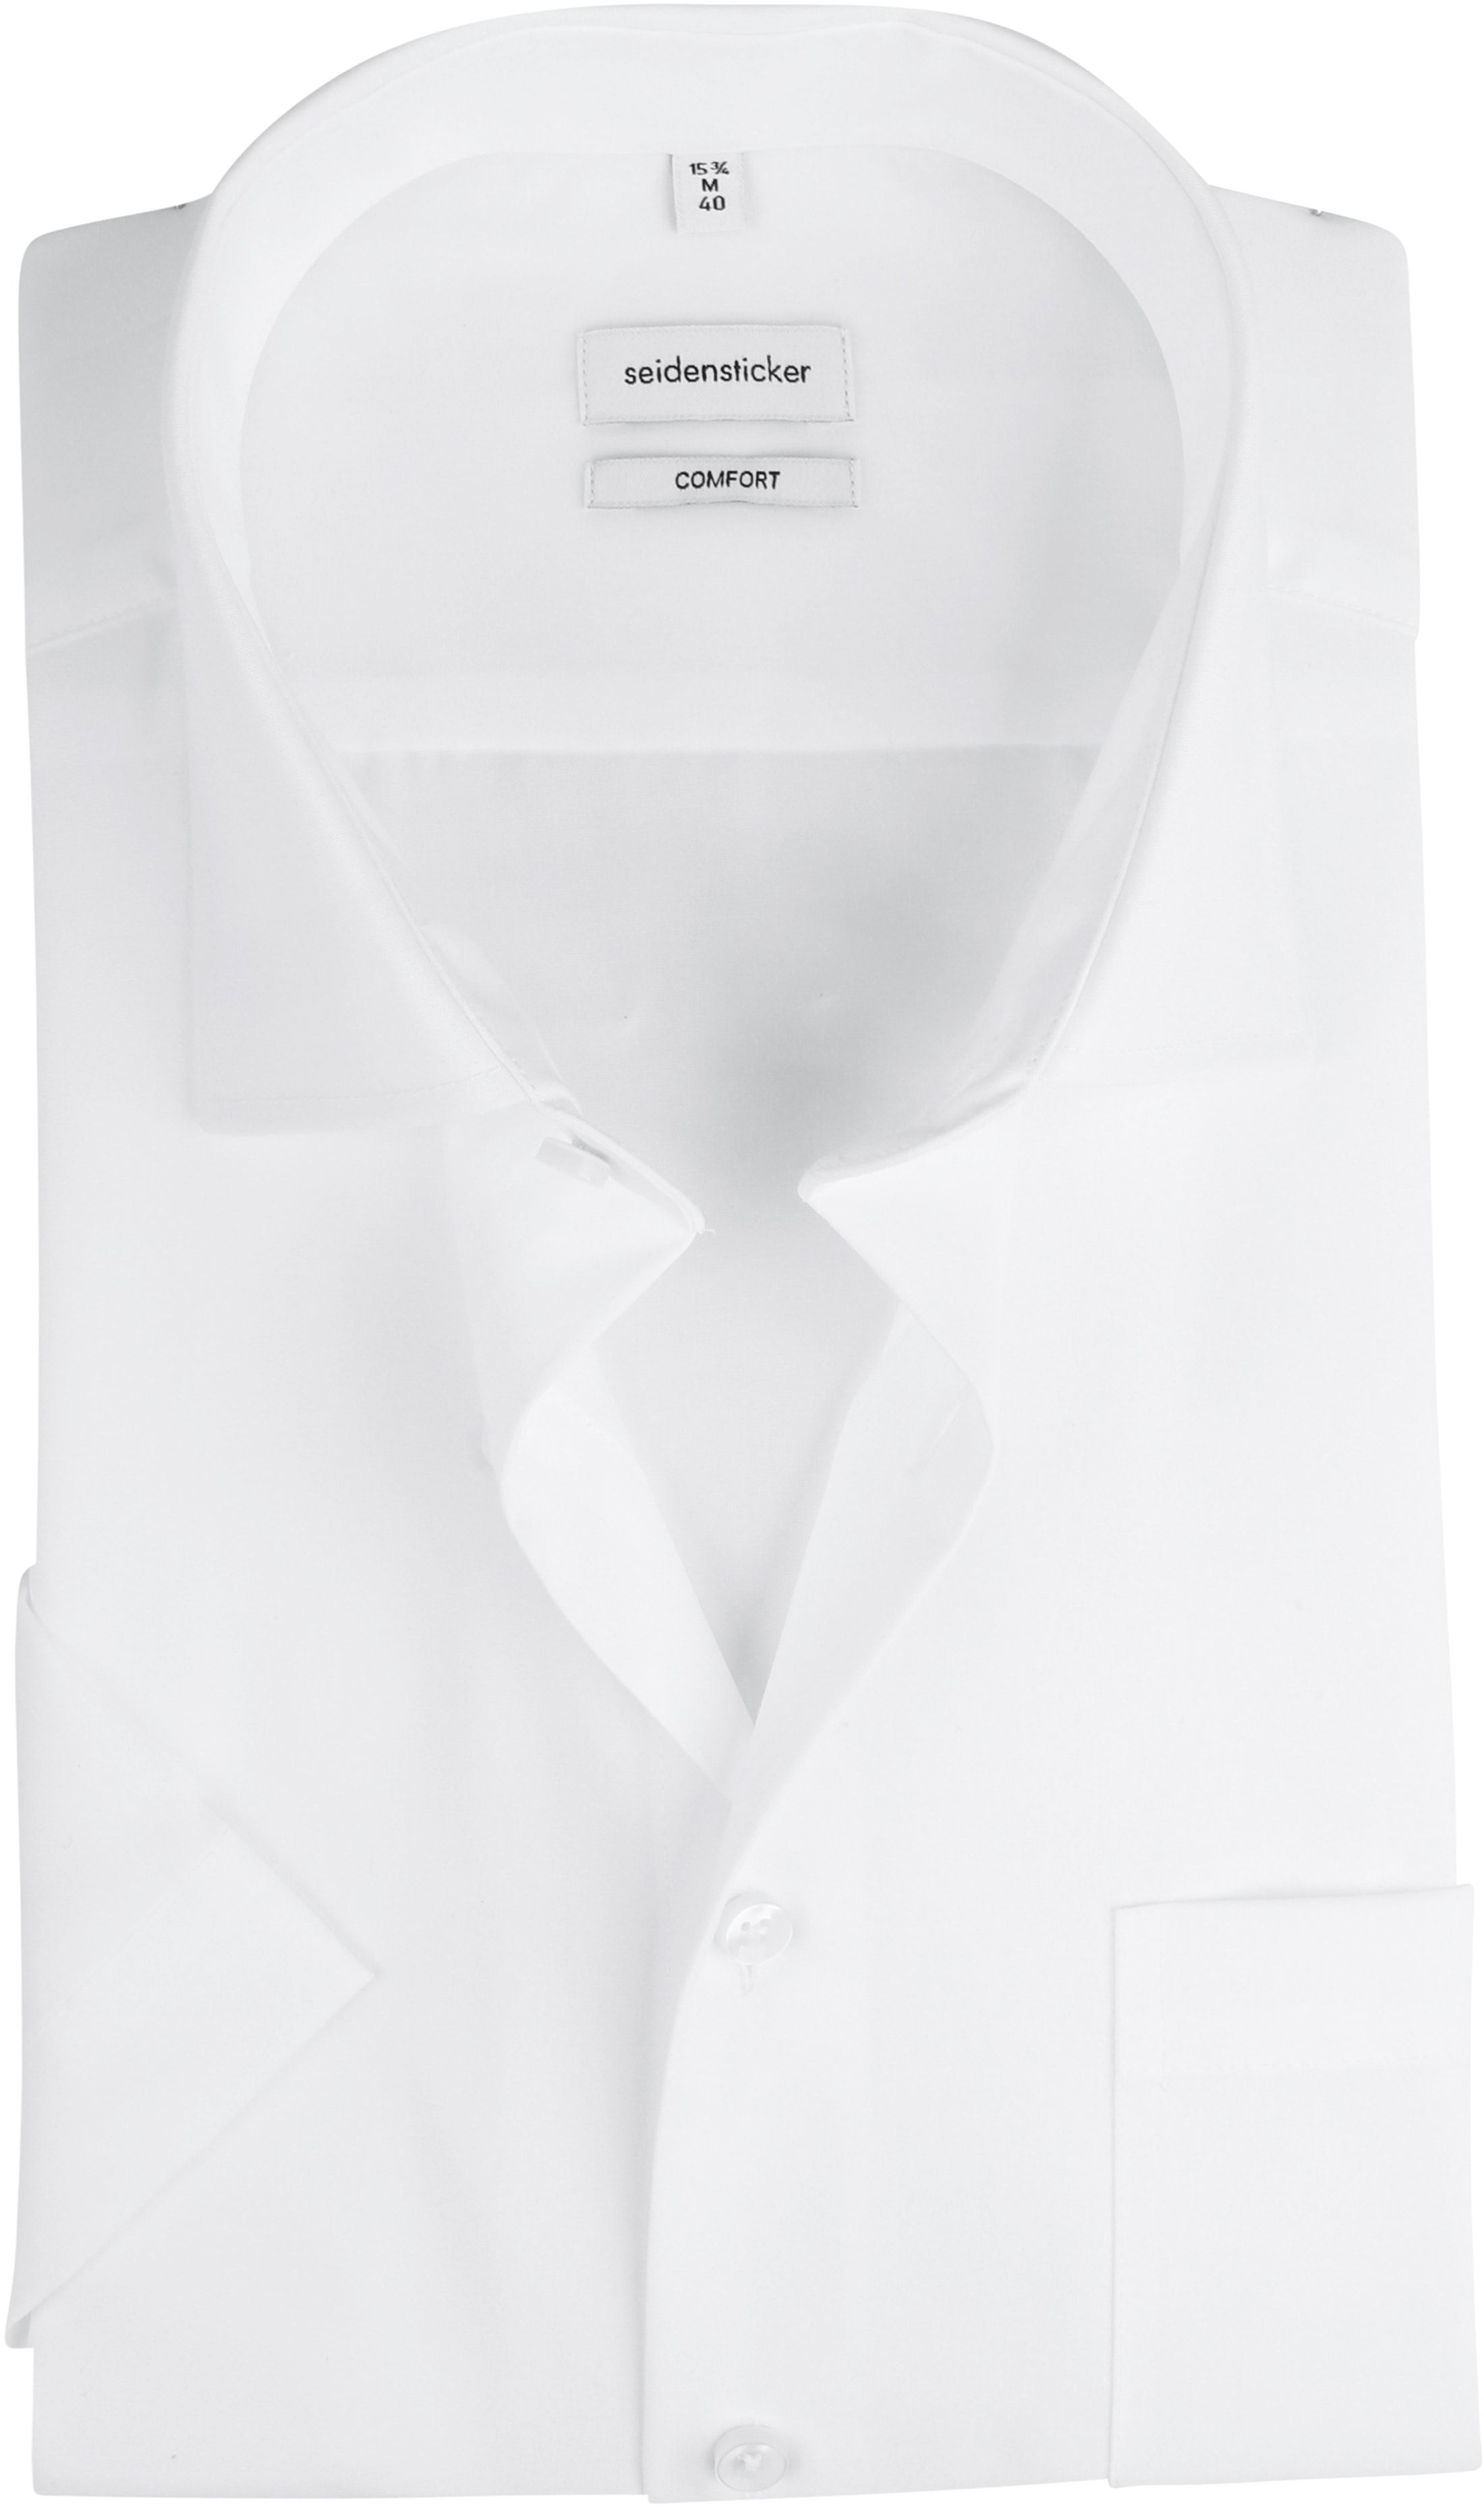 Seidensticker Shirt Comfort-Fit White size 15 3/4